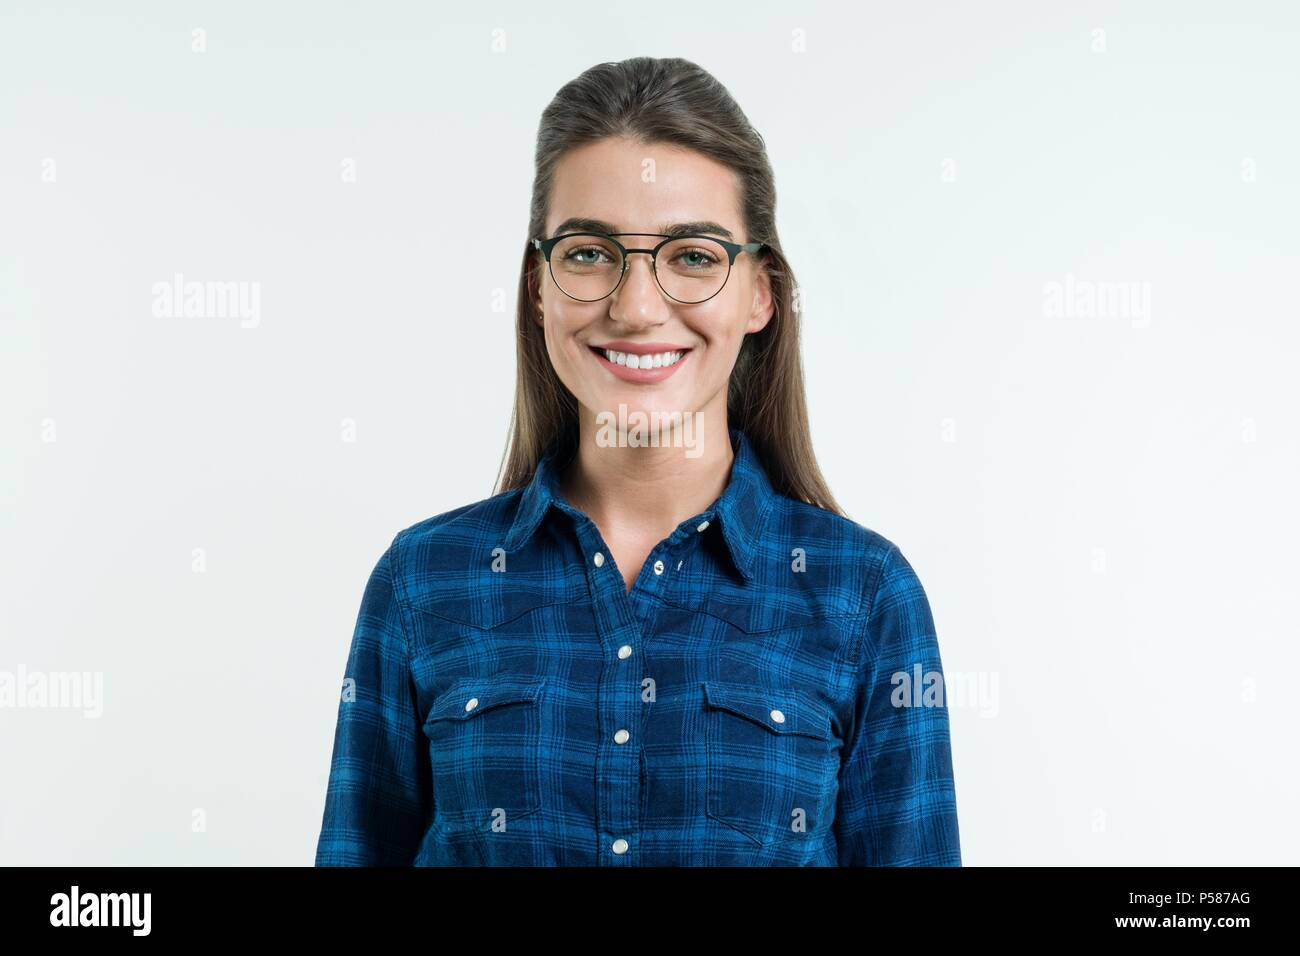 Ritratto di giovane donna positiva con rettilinei lunghi capelli, occhi blu e un bel sorriso, ponendo in studio su sfondo bianco. Persone, happine Foto Stock